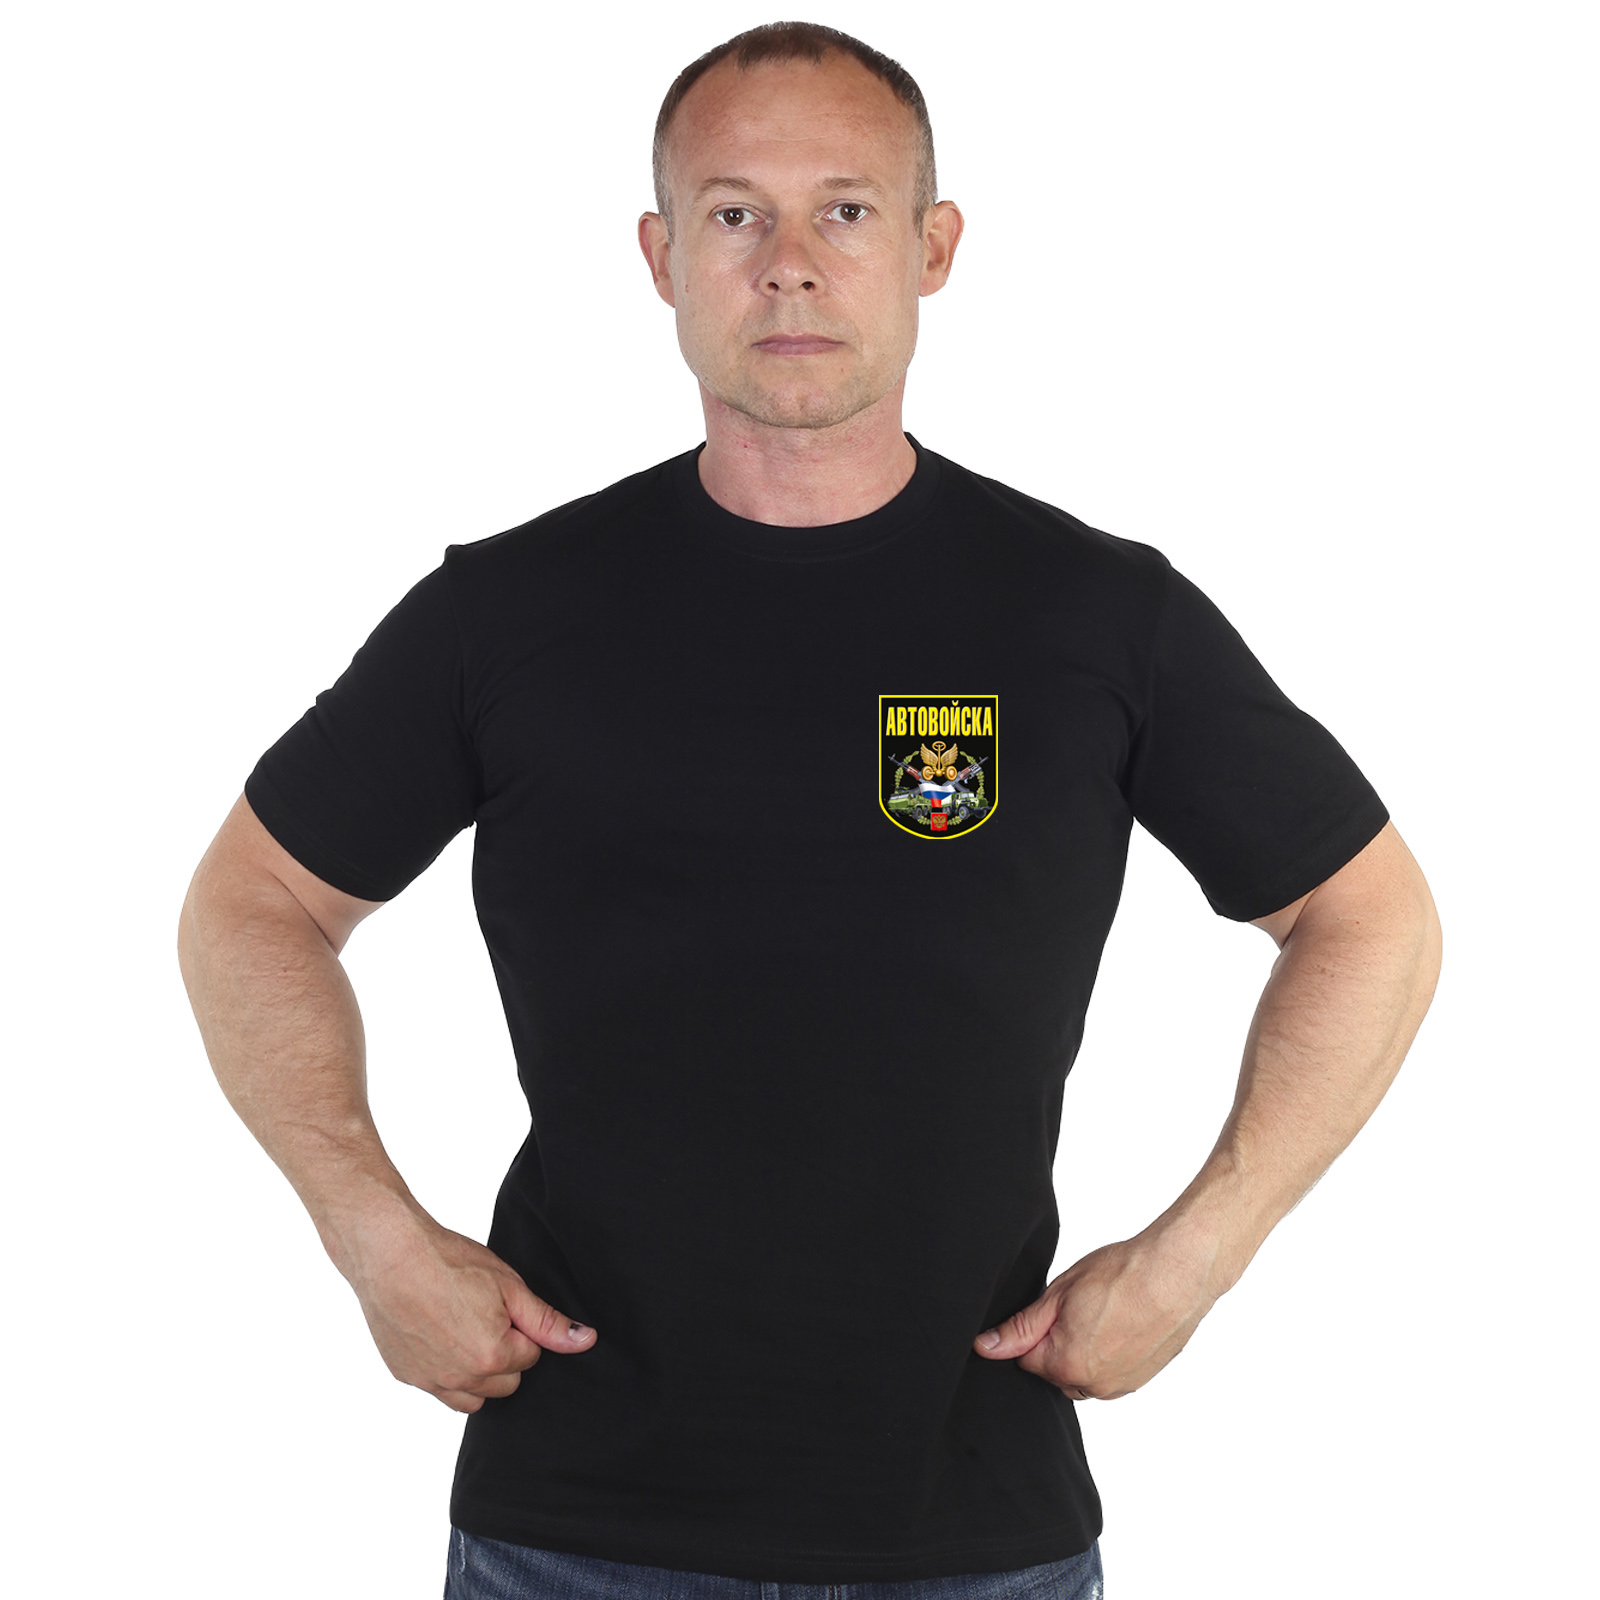 Чёрная футболка с термотрансфером "Автовойска" 